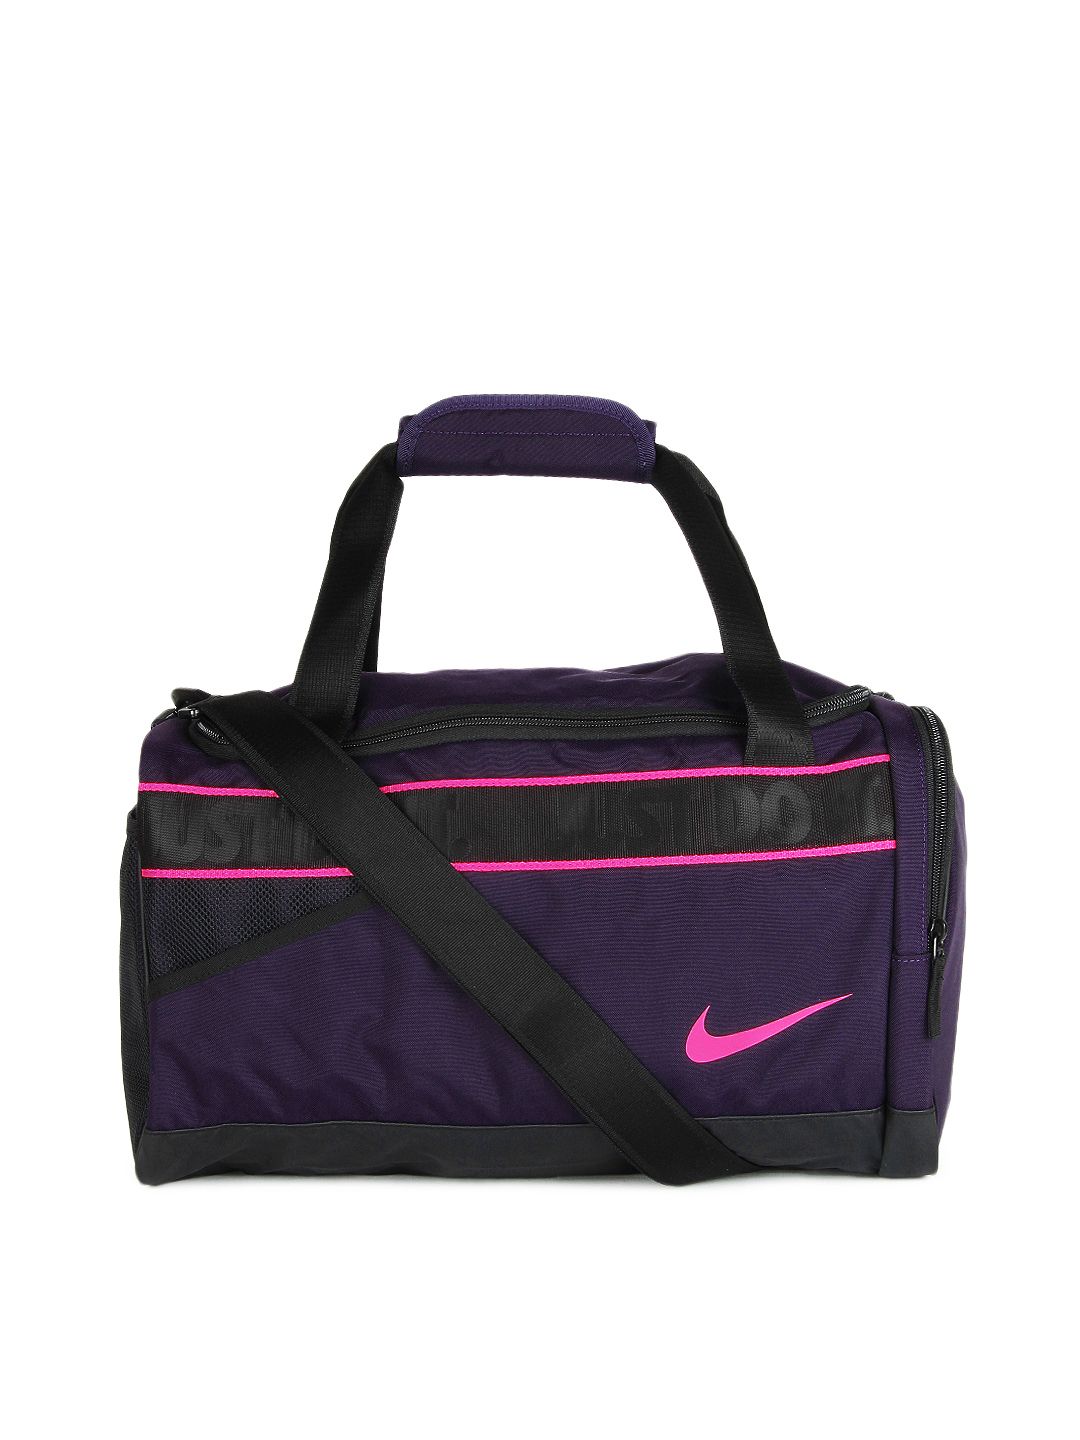 Buy Nike Women Purple Varsity Duffel Bag - 597 - Accessories for Women ...